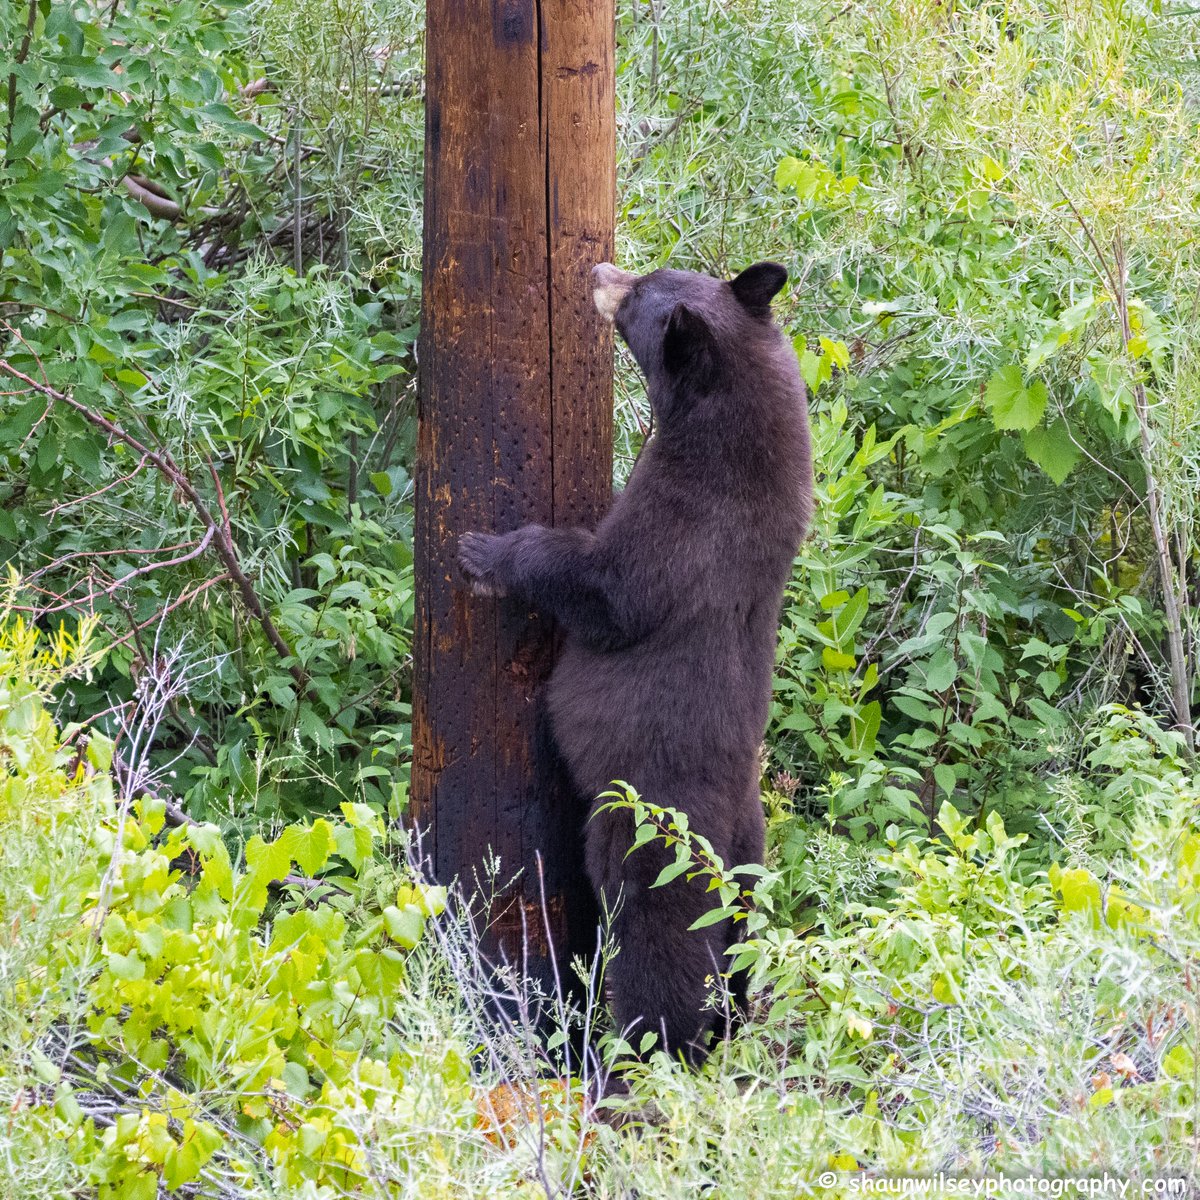 Black Bear contemplating climbing up this power pole. Colorado 8/21/2022. #colorado #coloradophotography #photography #wildlife #wildlifephotography #bear #bears #bearlovers #blackbear #blackbears